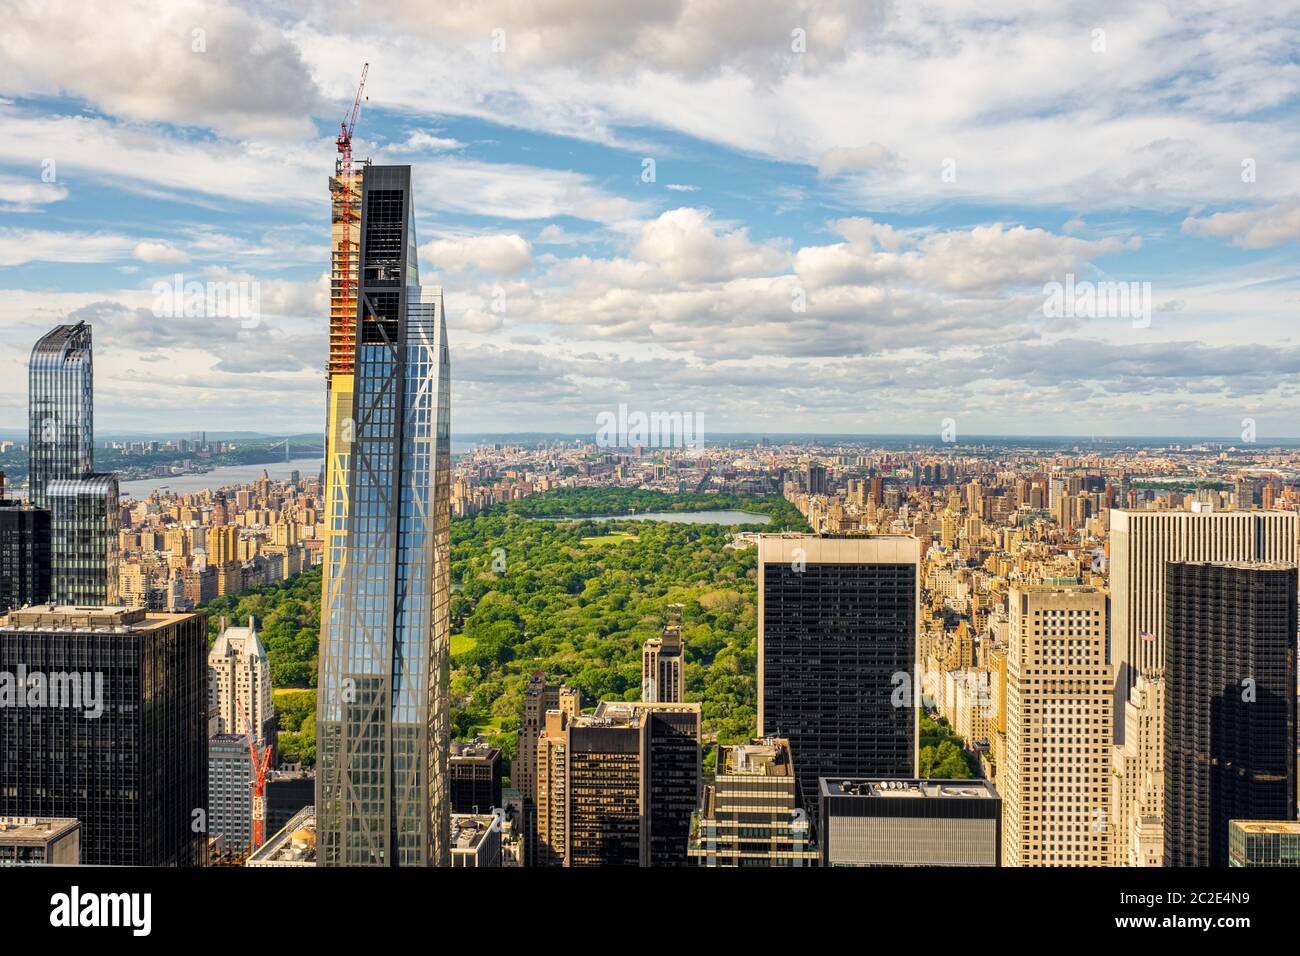 Vue panoramique sur la ville et Central Park of New York depuis le Rockefeller Center situé sur le toit Banque D'Images